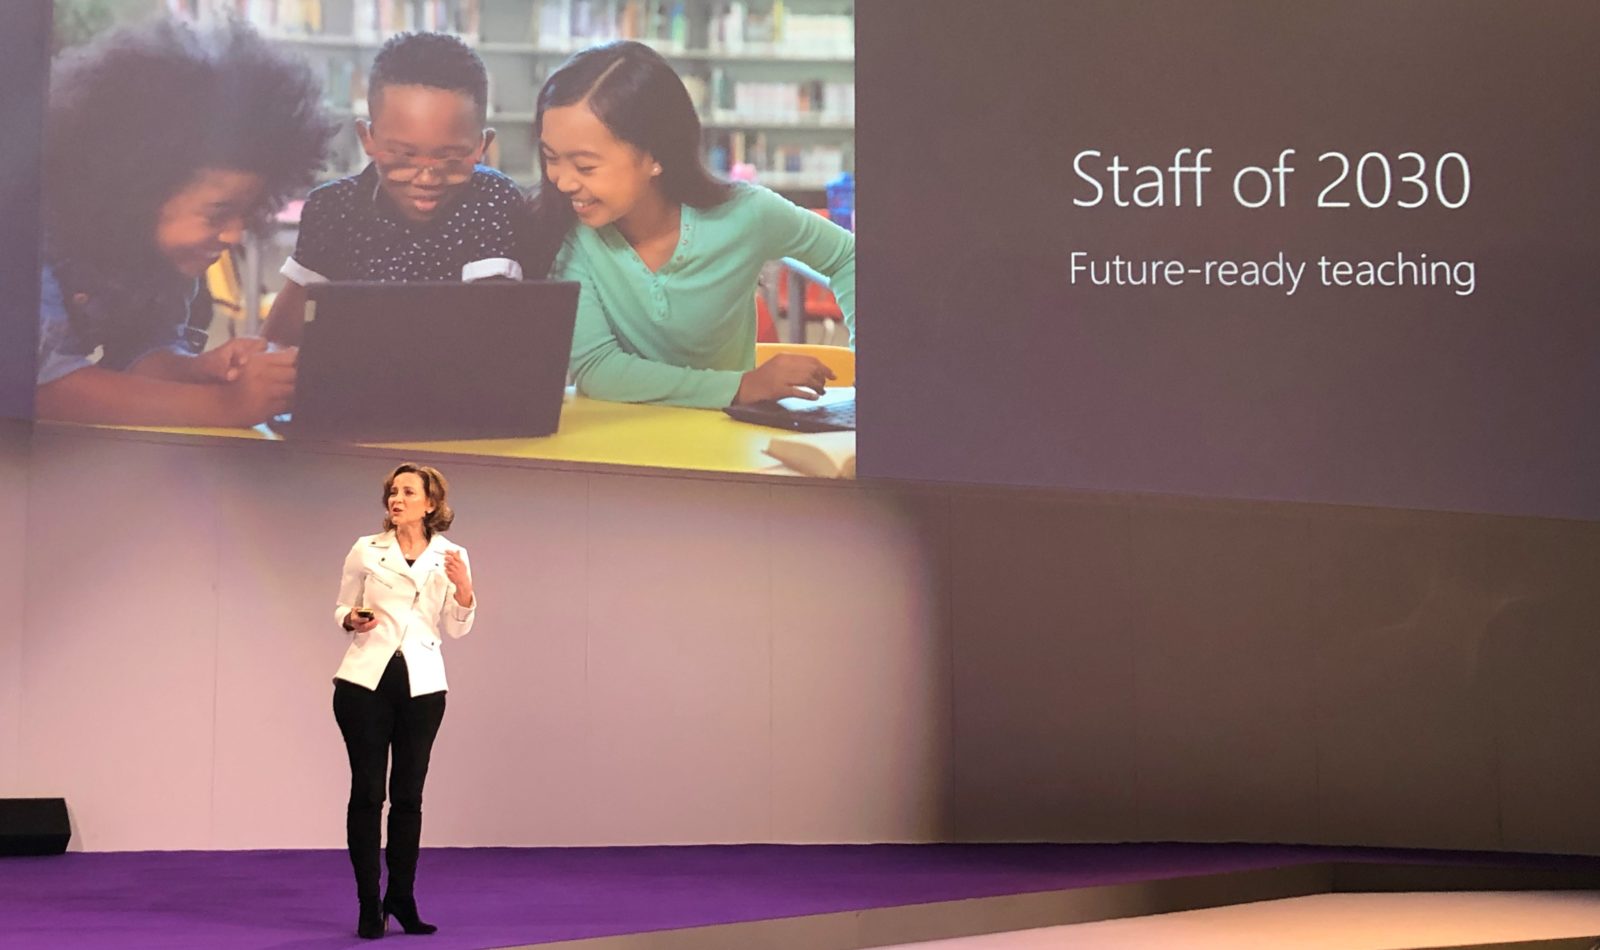 Barbara Holzapfel, gerente general de mercadotecnia para la educación en Microsoft, habla en el escenario de BETT